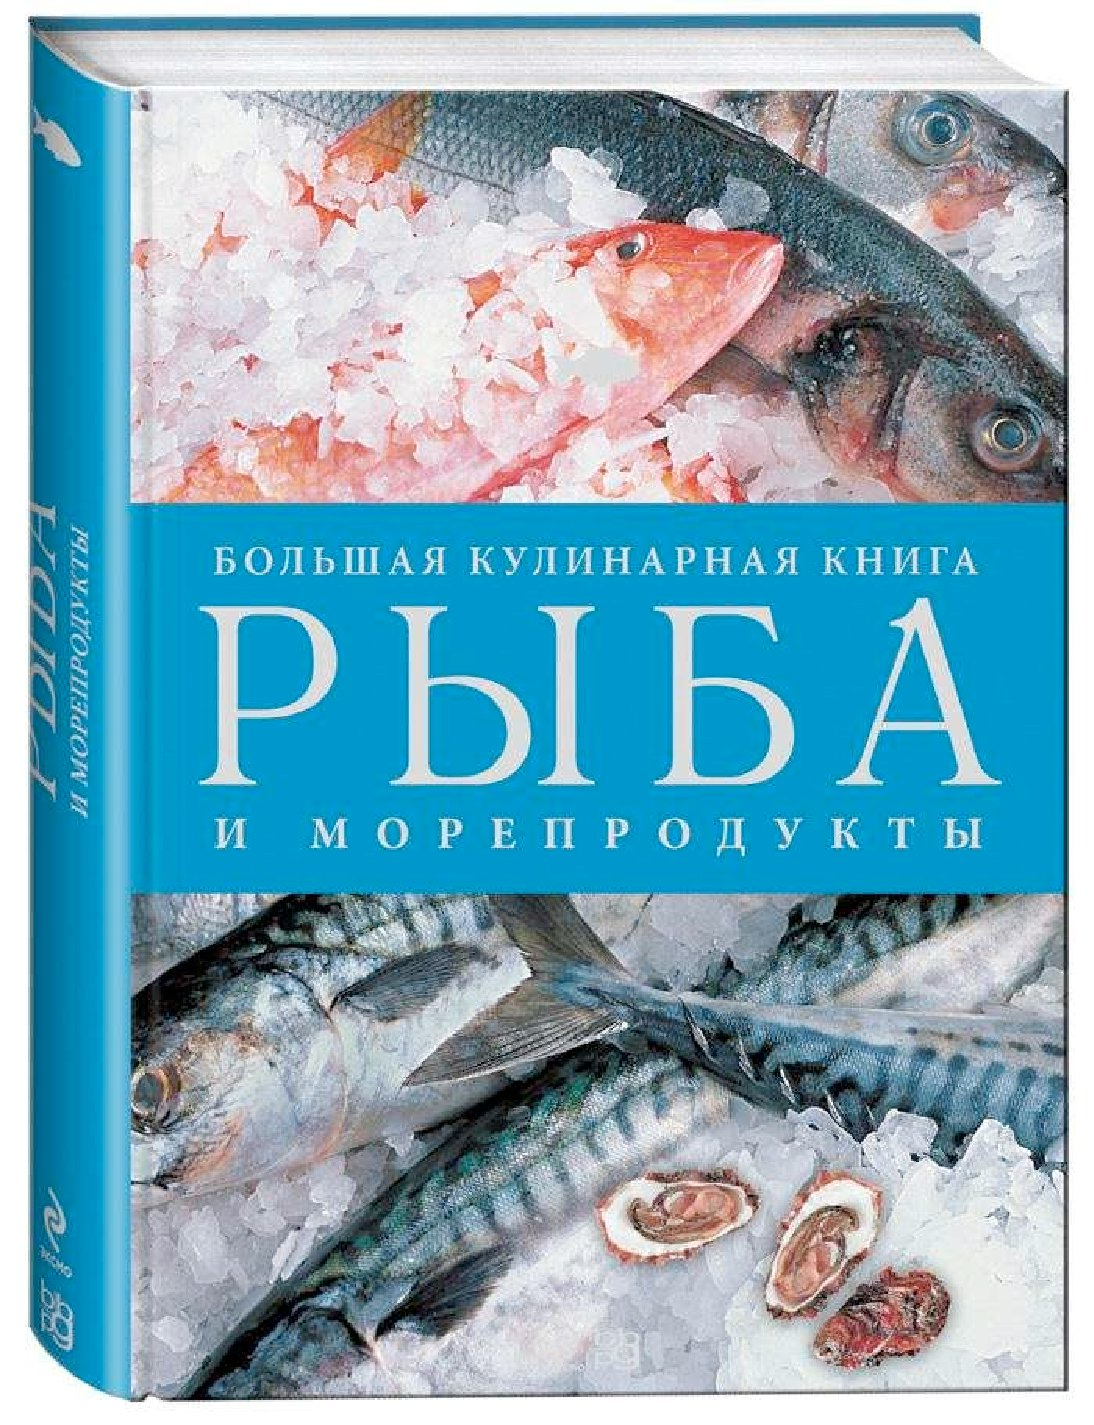 Книги про рыб. Большая кулинарная книга рыба и морепродукты. Кулинарная книга о рыбе. Книга Эксмо рыба и морепродукты.